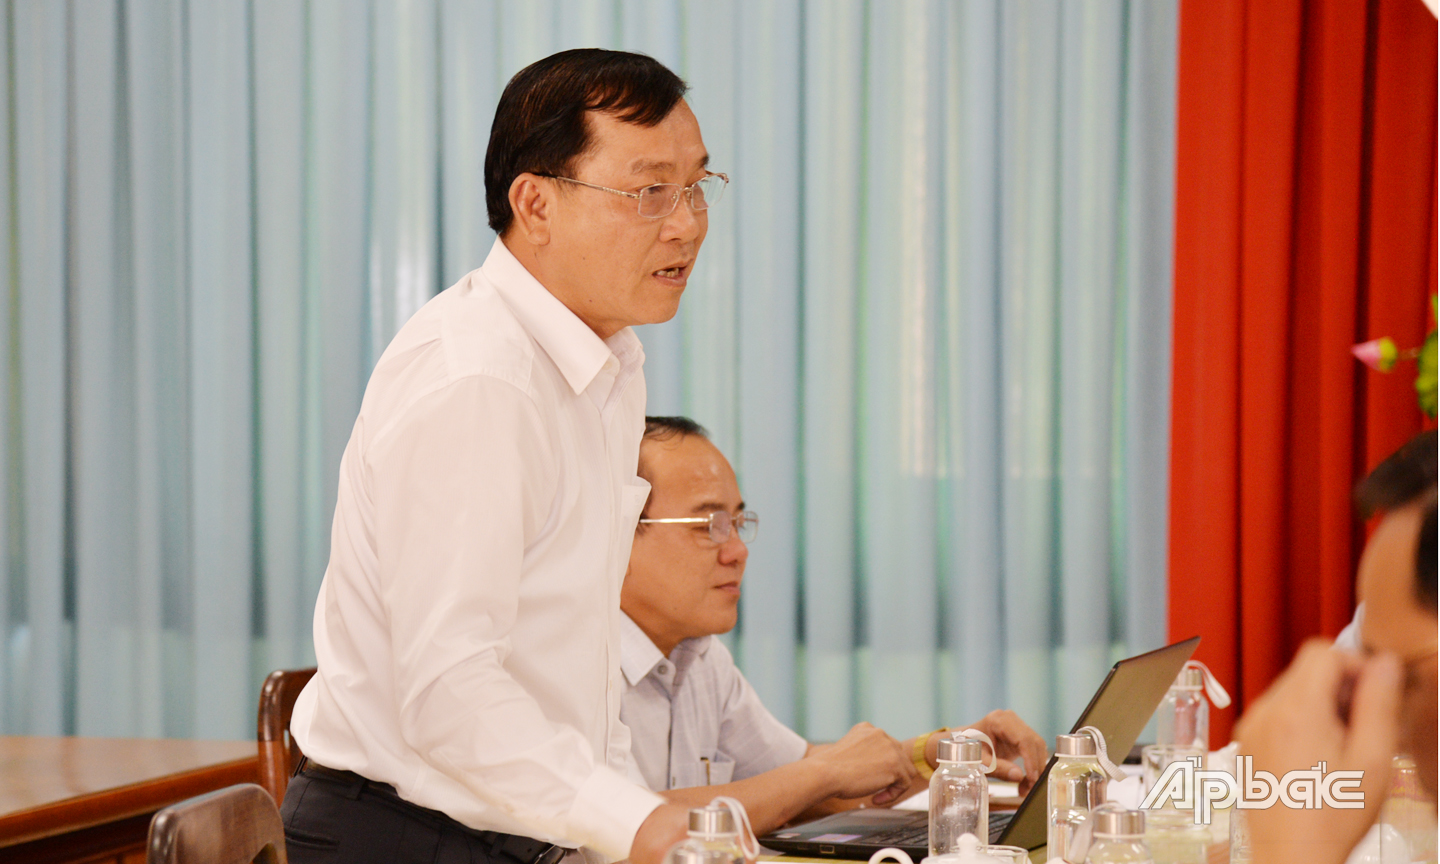 Đồng chí Nguyễn Văn Vĩnh, Phó Bí thư Tỉnh ủy, Chủ tịch UBND tỉnh, Phó Chủ tịch Ủy ban bầu cử tỉnh giải đáp về những vướng mắc của thành viên.